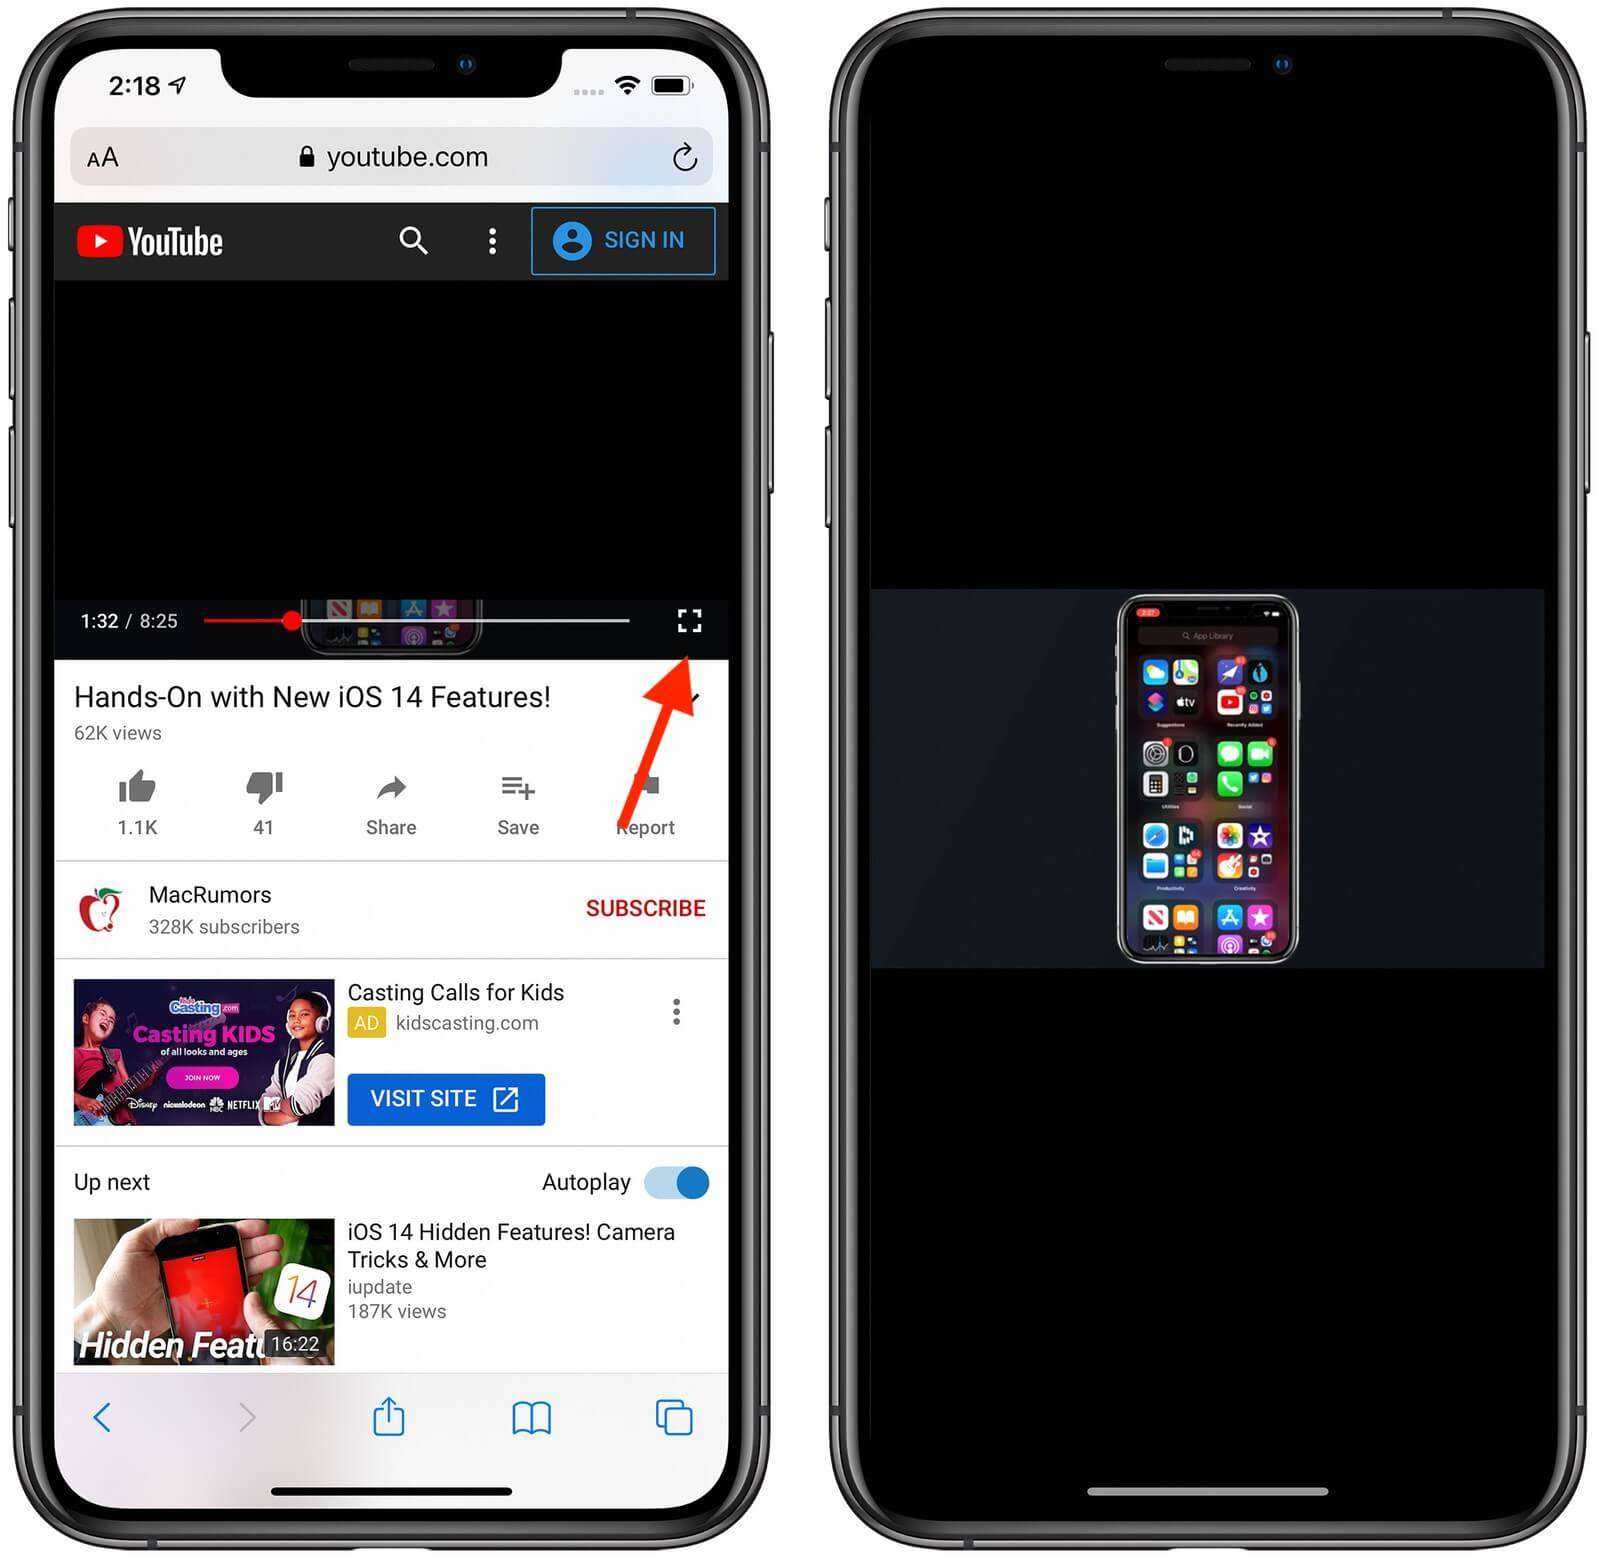 Можно вместе с видео. Ютуб на айфоне. Как на пйфон сделать два экрана. Ютуб в фоновом режиме приложение. Экран телефона с приложениями.